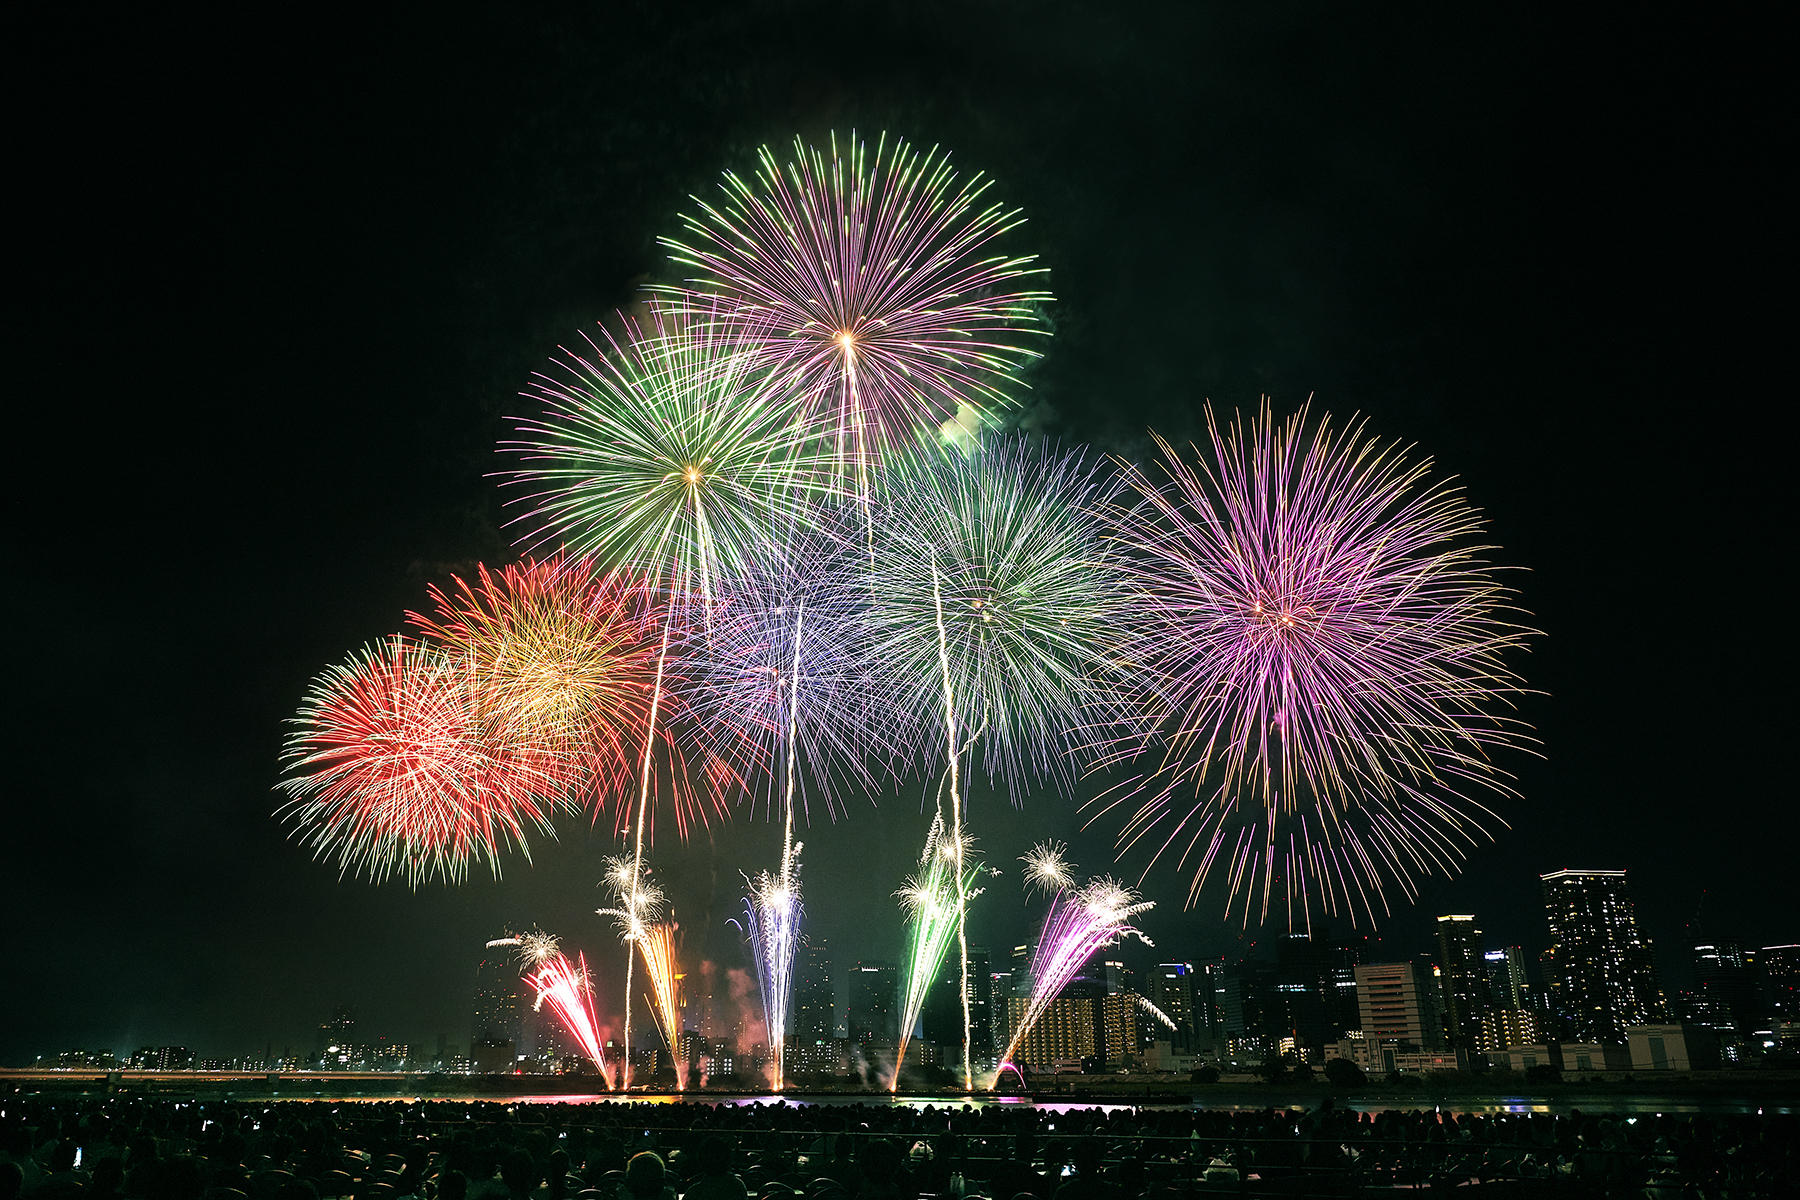 「〜HOPE〜みんなの想いを&quot;キボウ&quot;の花火に乗せて！！」をテーマに開催された『第35回 なにわ淀川花火大会』に響く、4年ぶりの大歓声